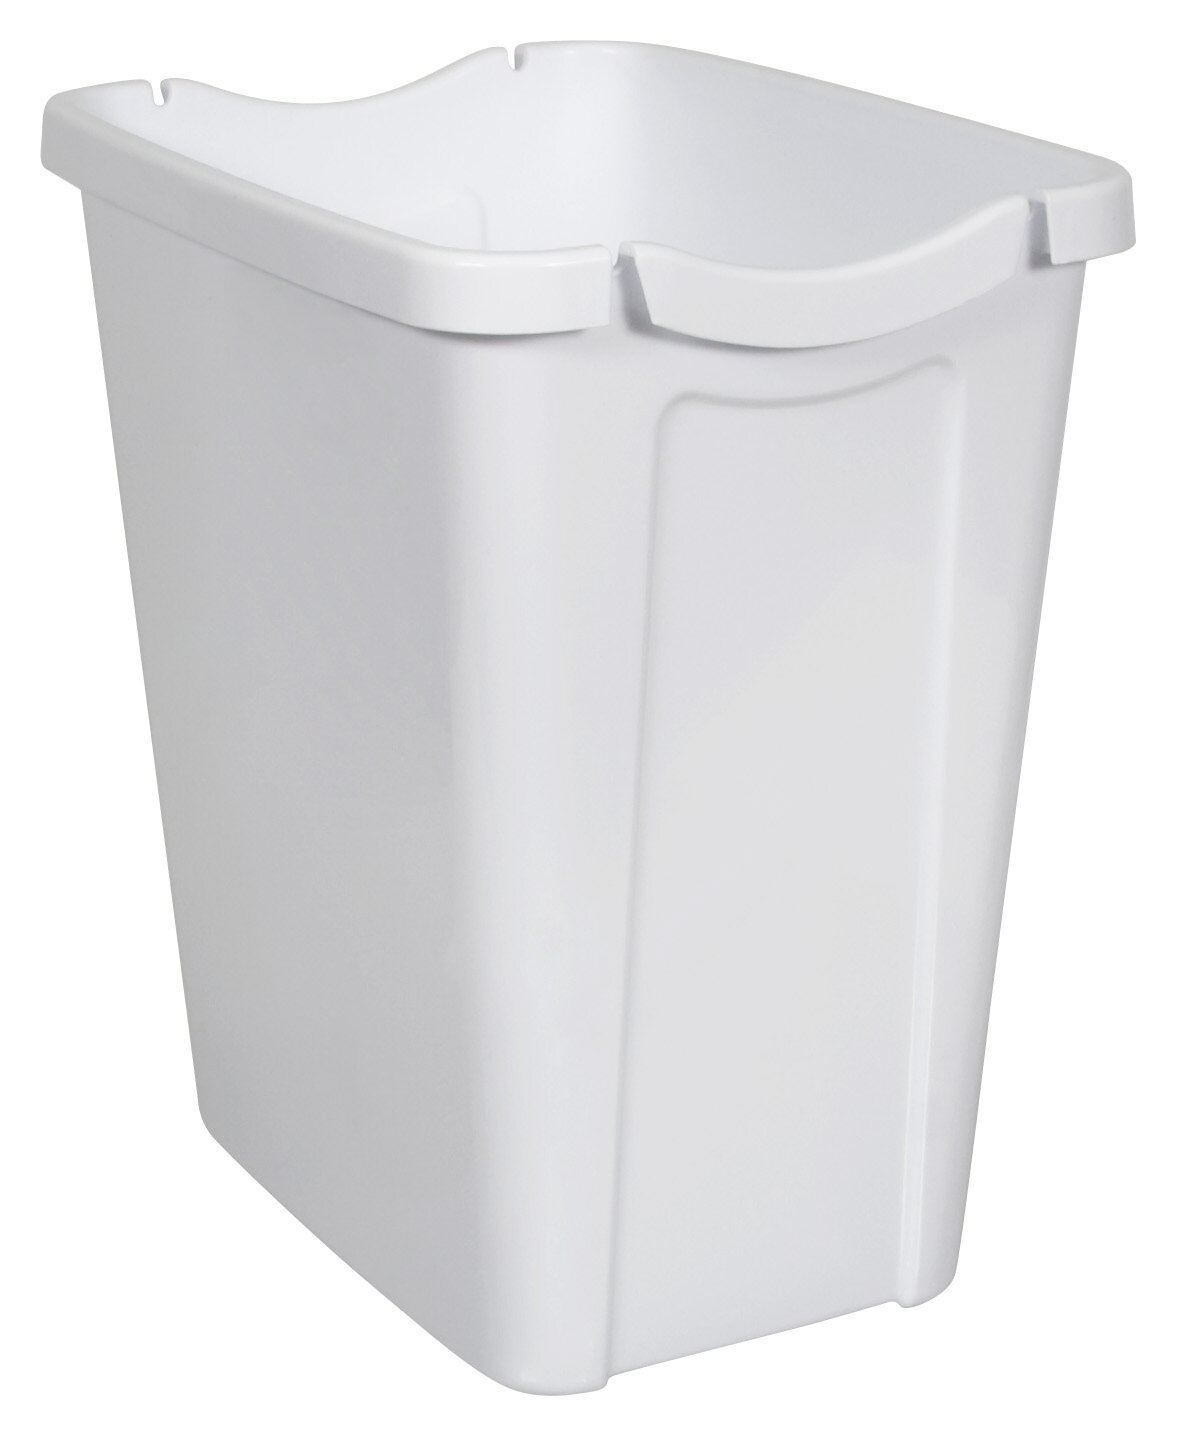 Bag Wastebasket Recycle Rubbermaid Waste White Bags Bin Plastic 3.5-Gal Set of 8 